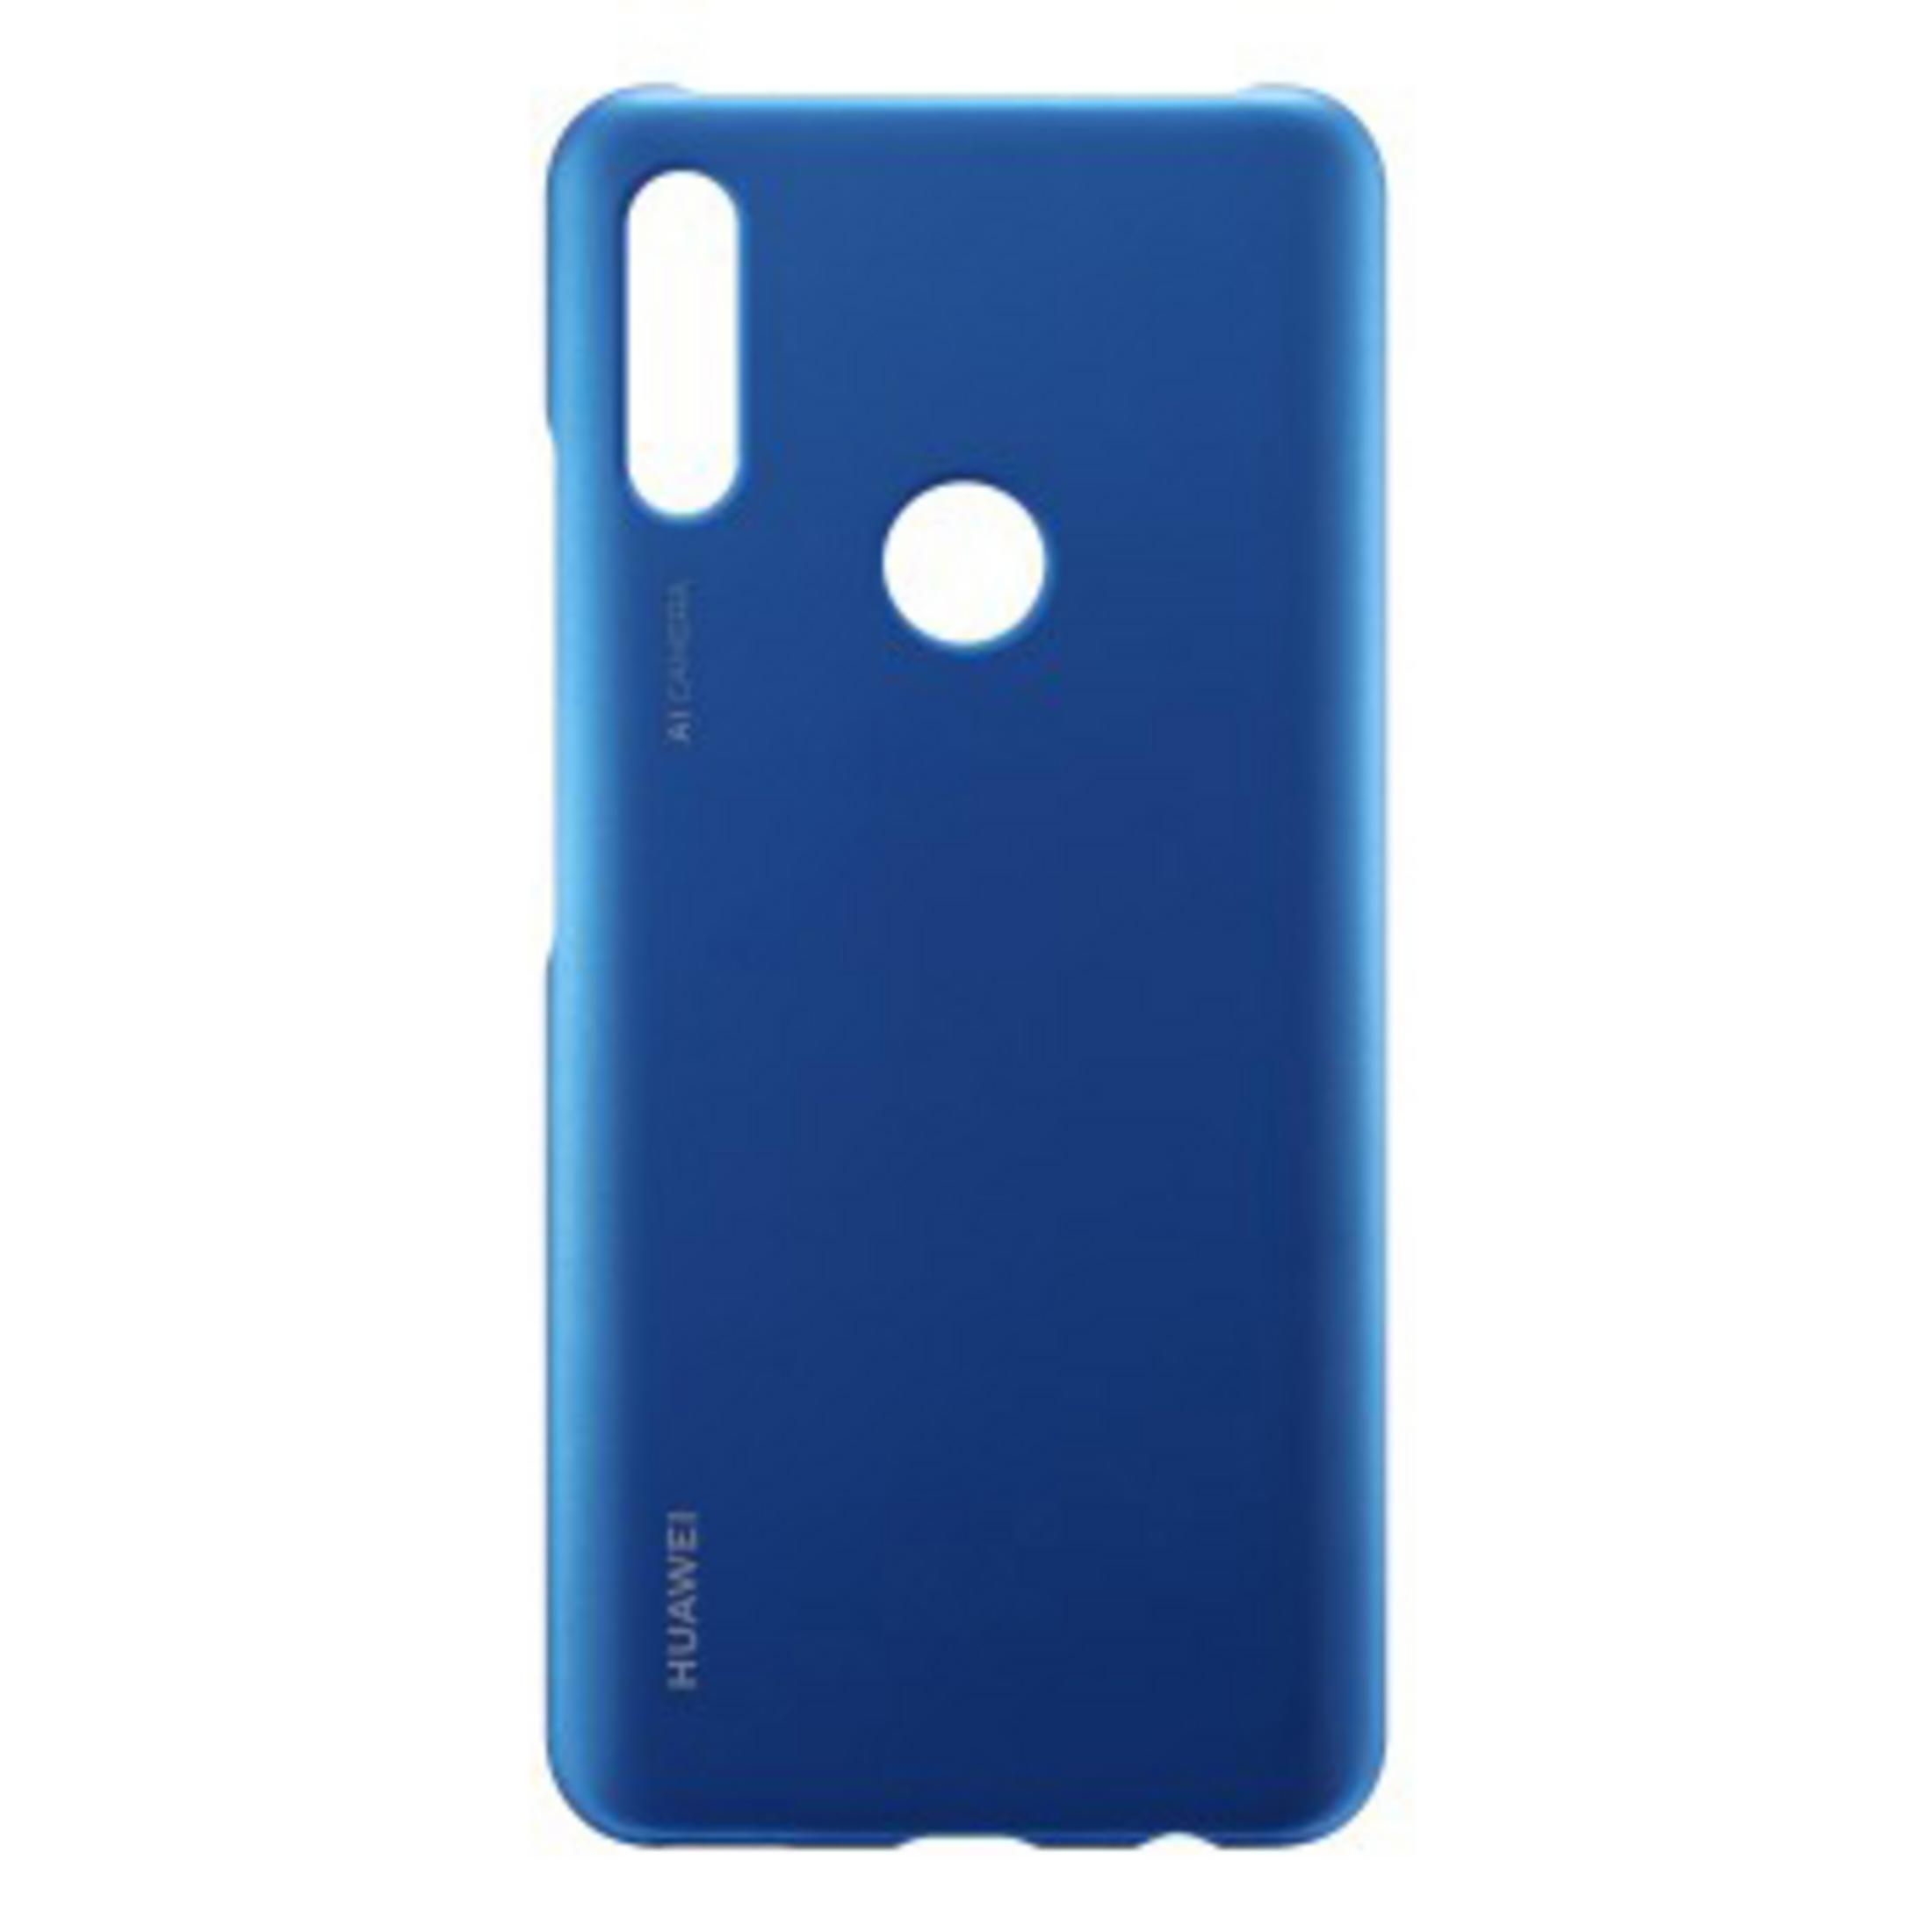 P HUAWEI Huawei, CO PC smart 51993124 HUAWEI Z, Blau CASE Backcover, SMART, P